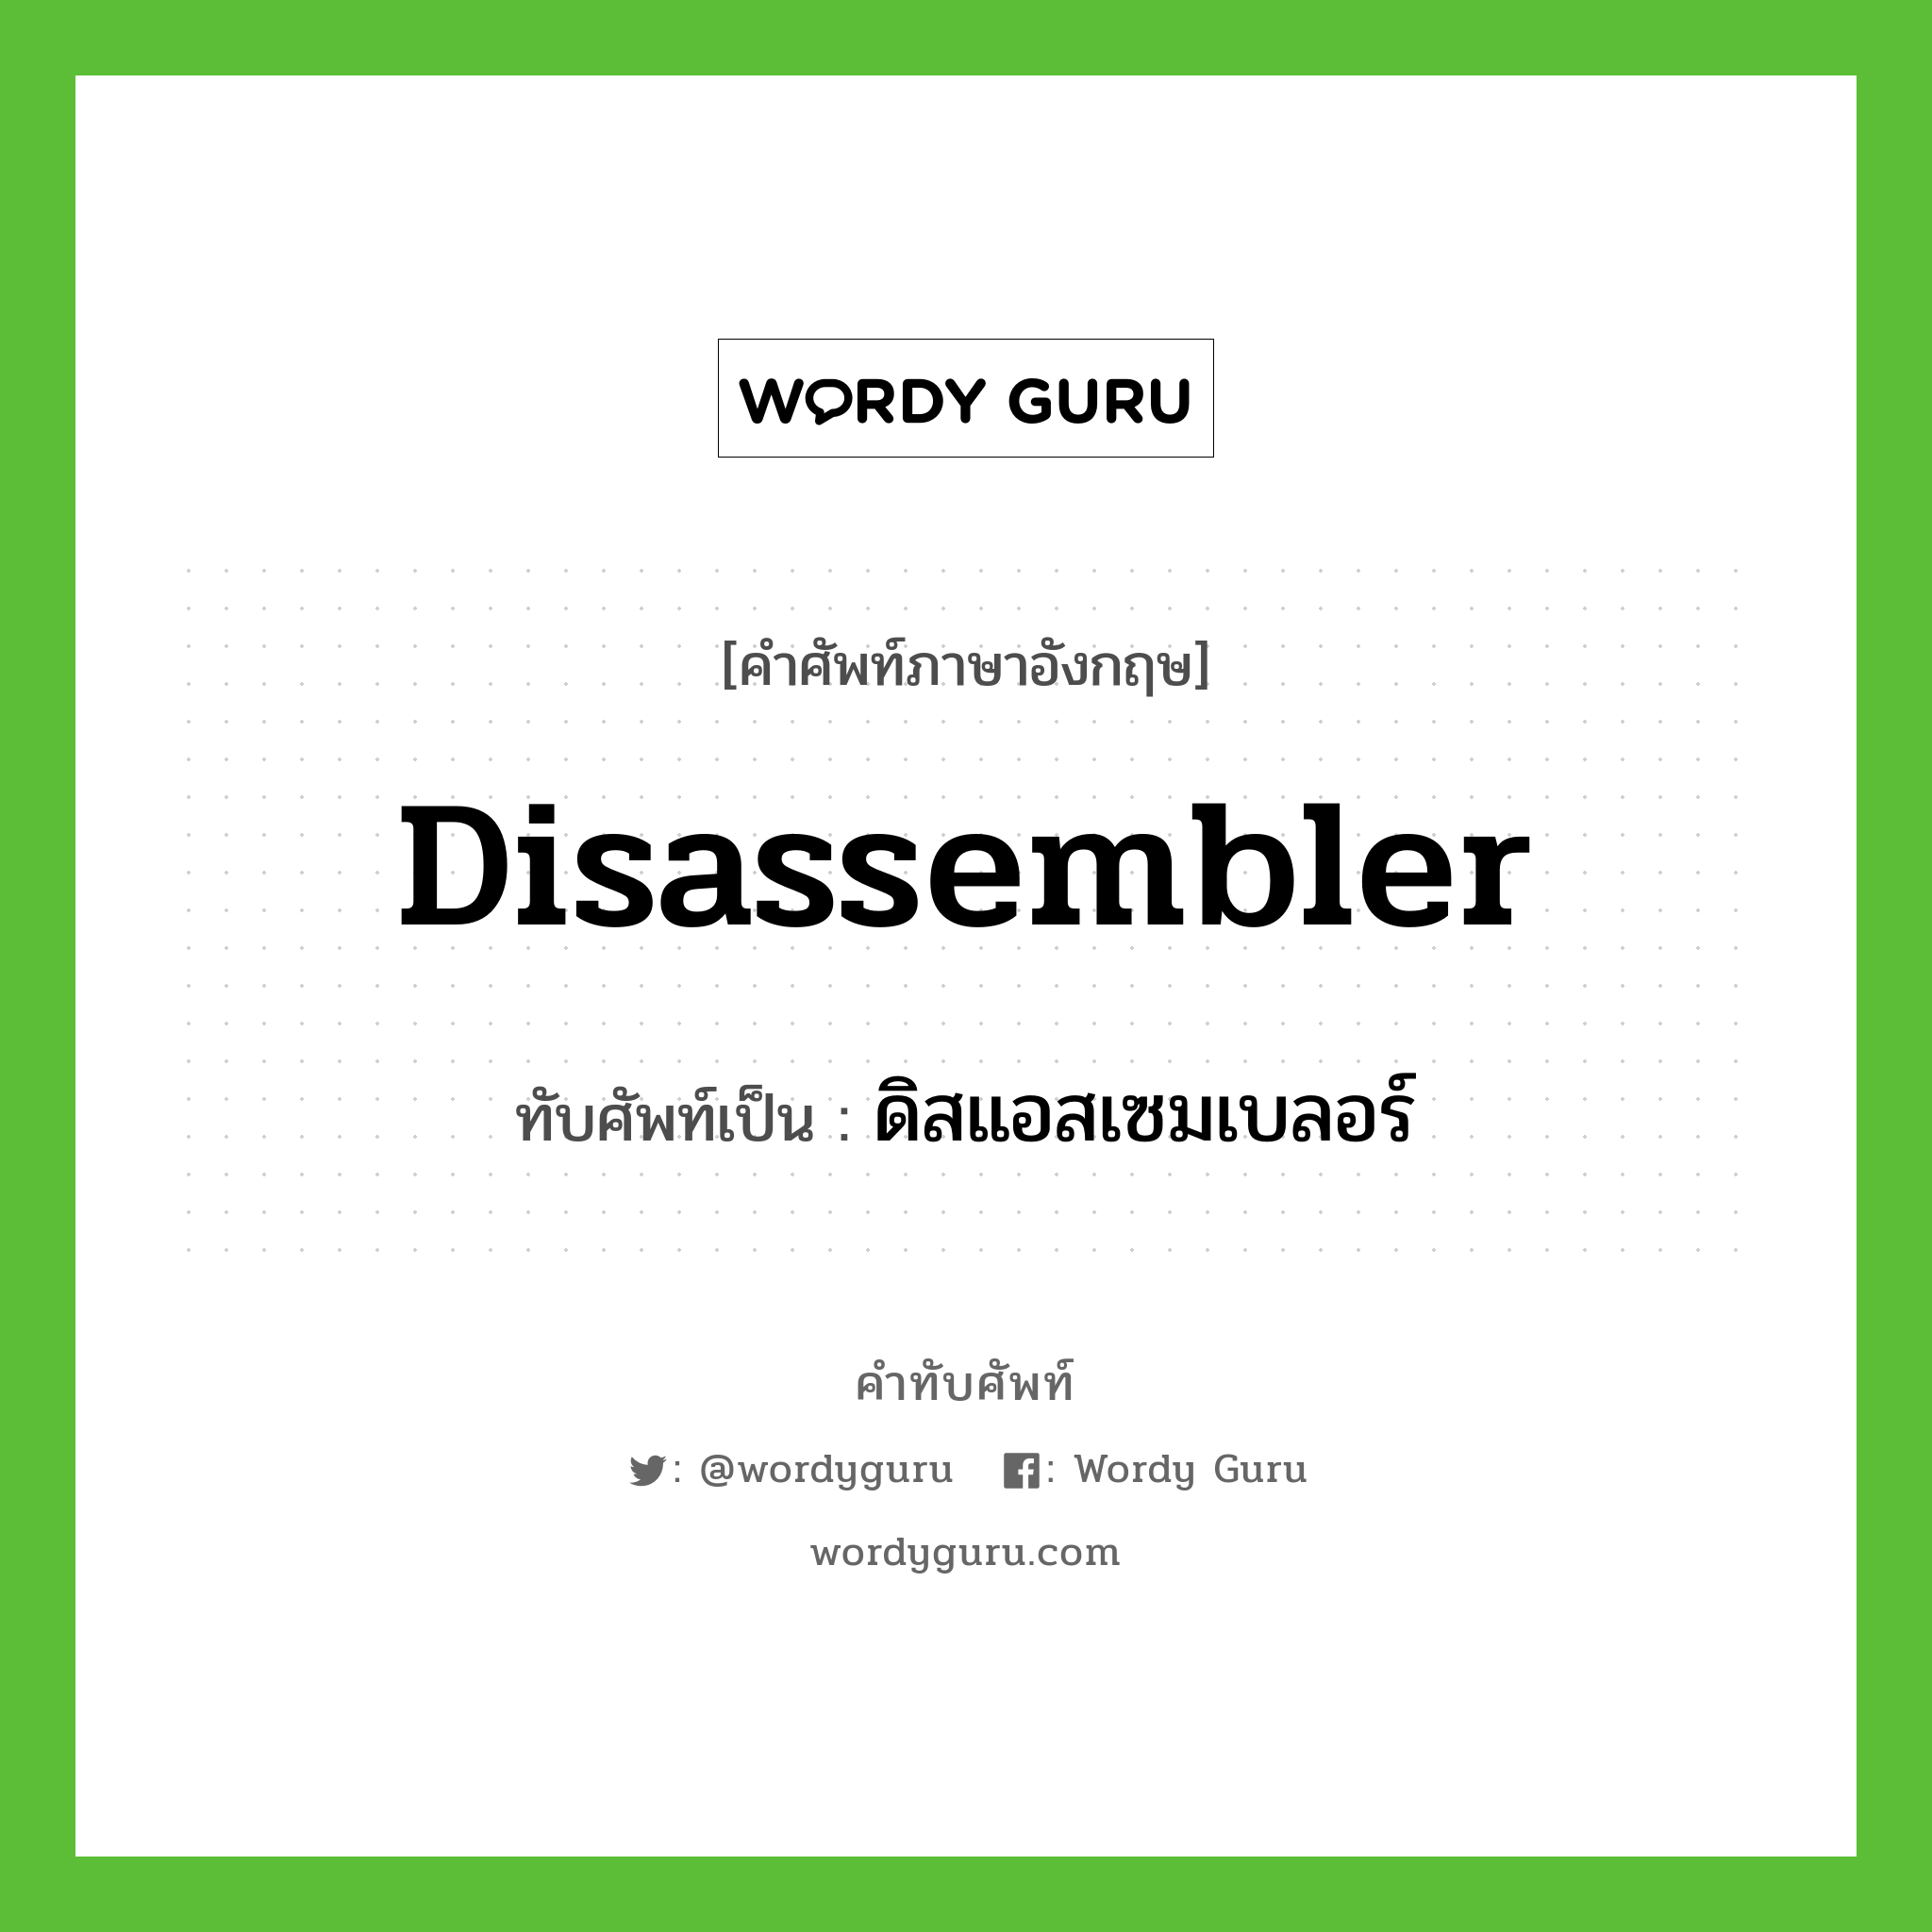 ดิสแอสเซมเบลอร์ เขียนอย่างไร?, คำศัพท์ภาษาอังกฤษ ดิสแอสเซมเบลอร์ ทับศัพท์เป็น disassembler